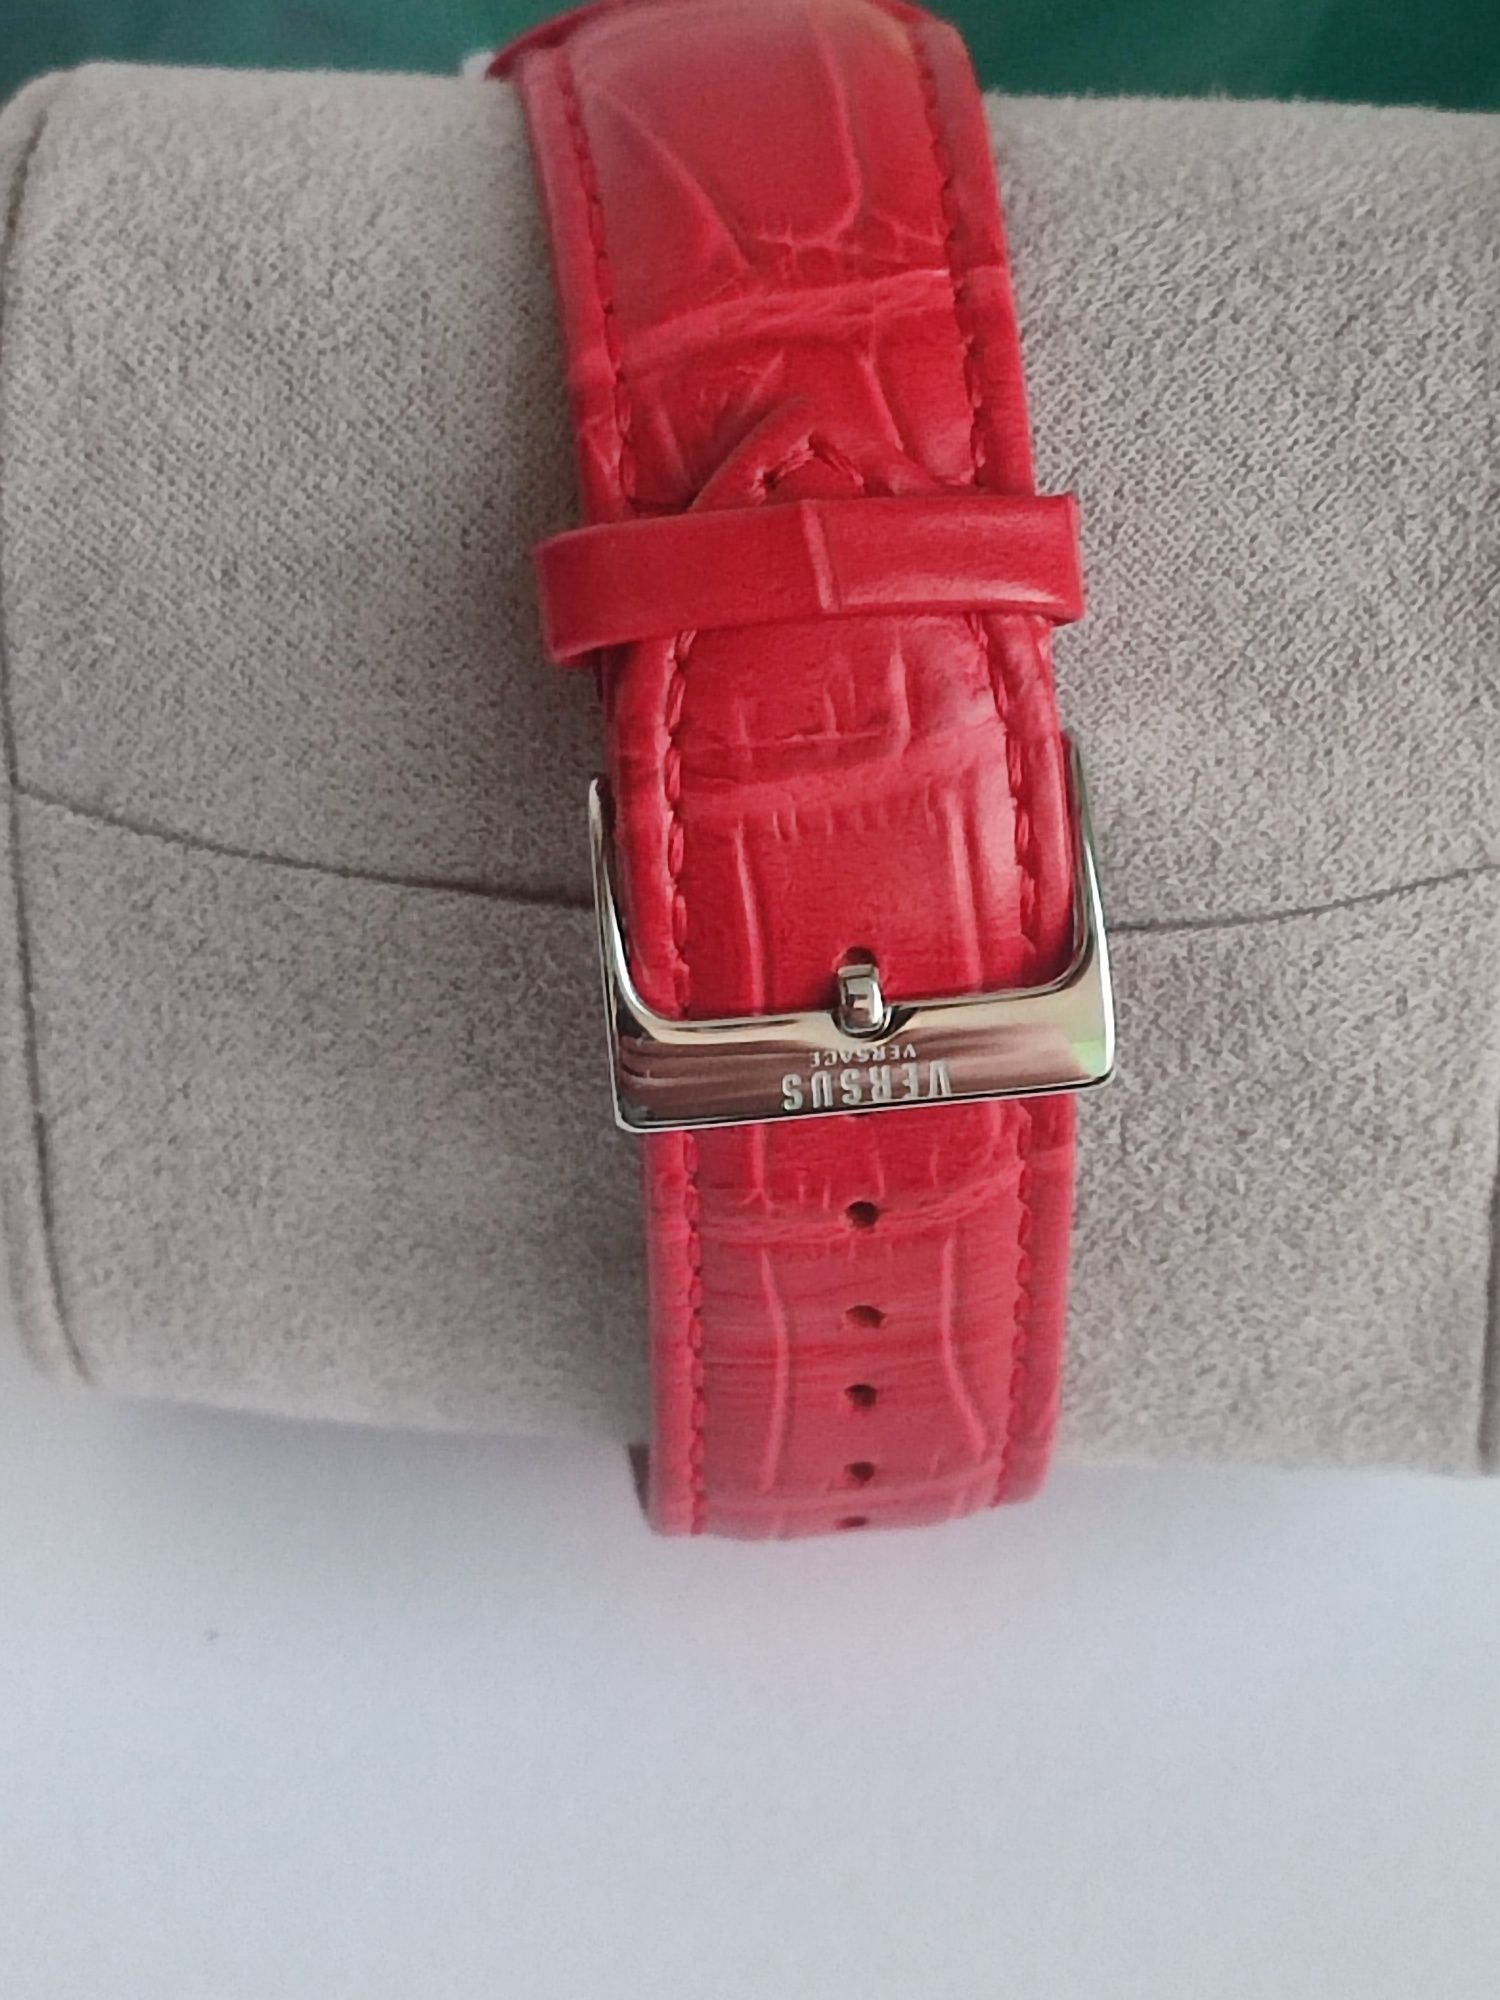 Жіночий годинник Versus by Versace SGC030012

Red